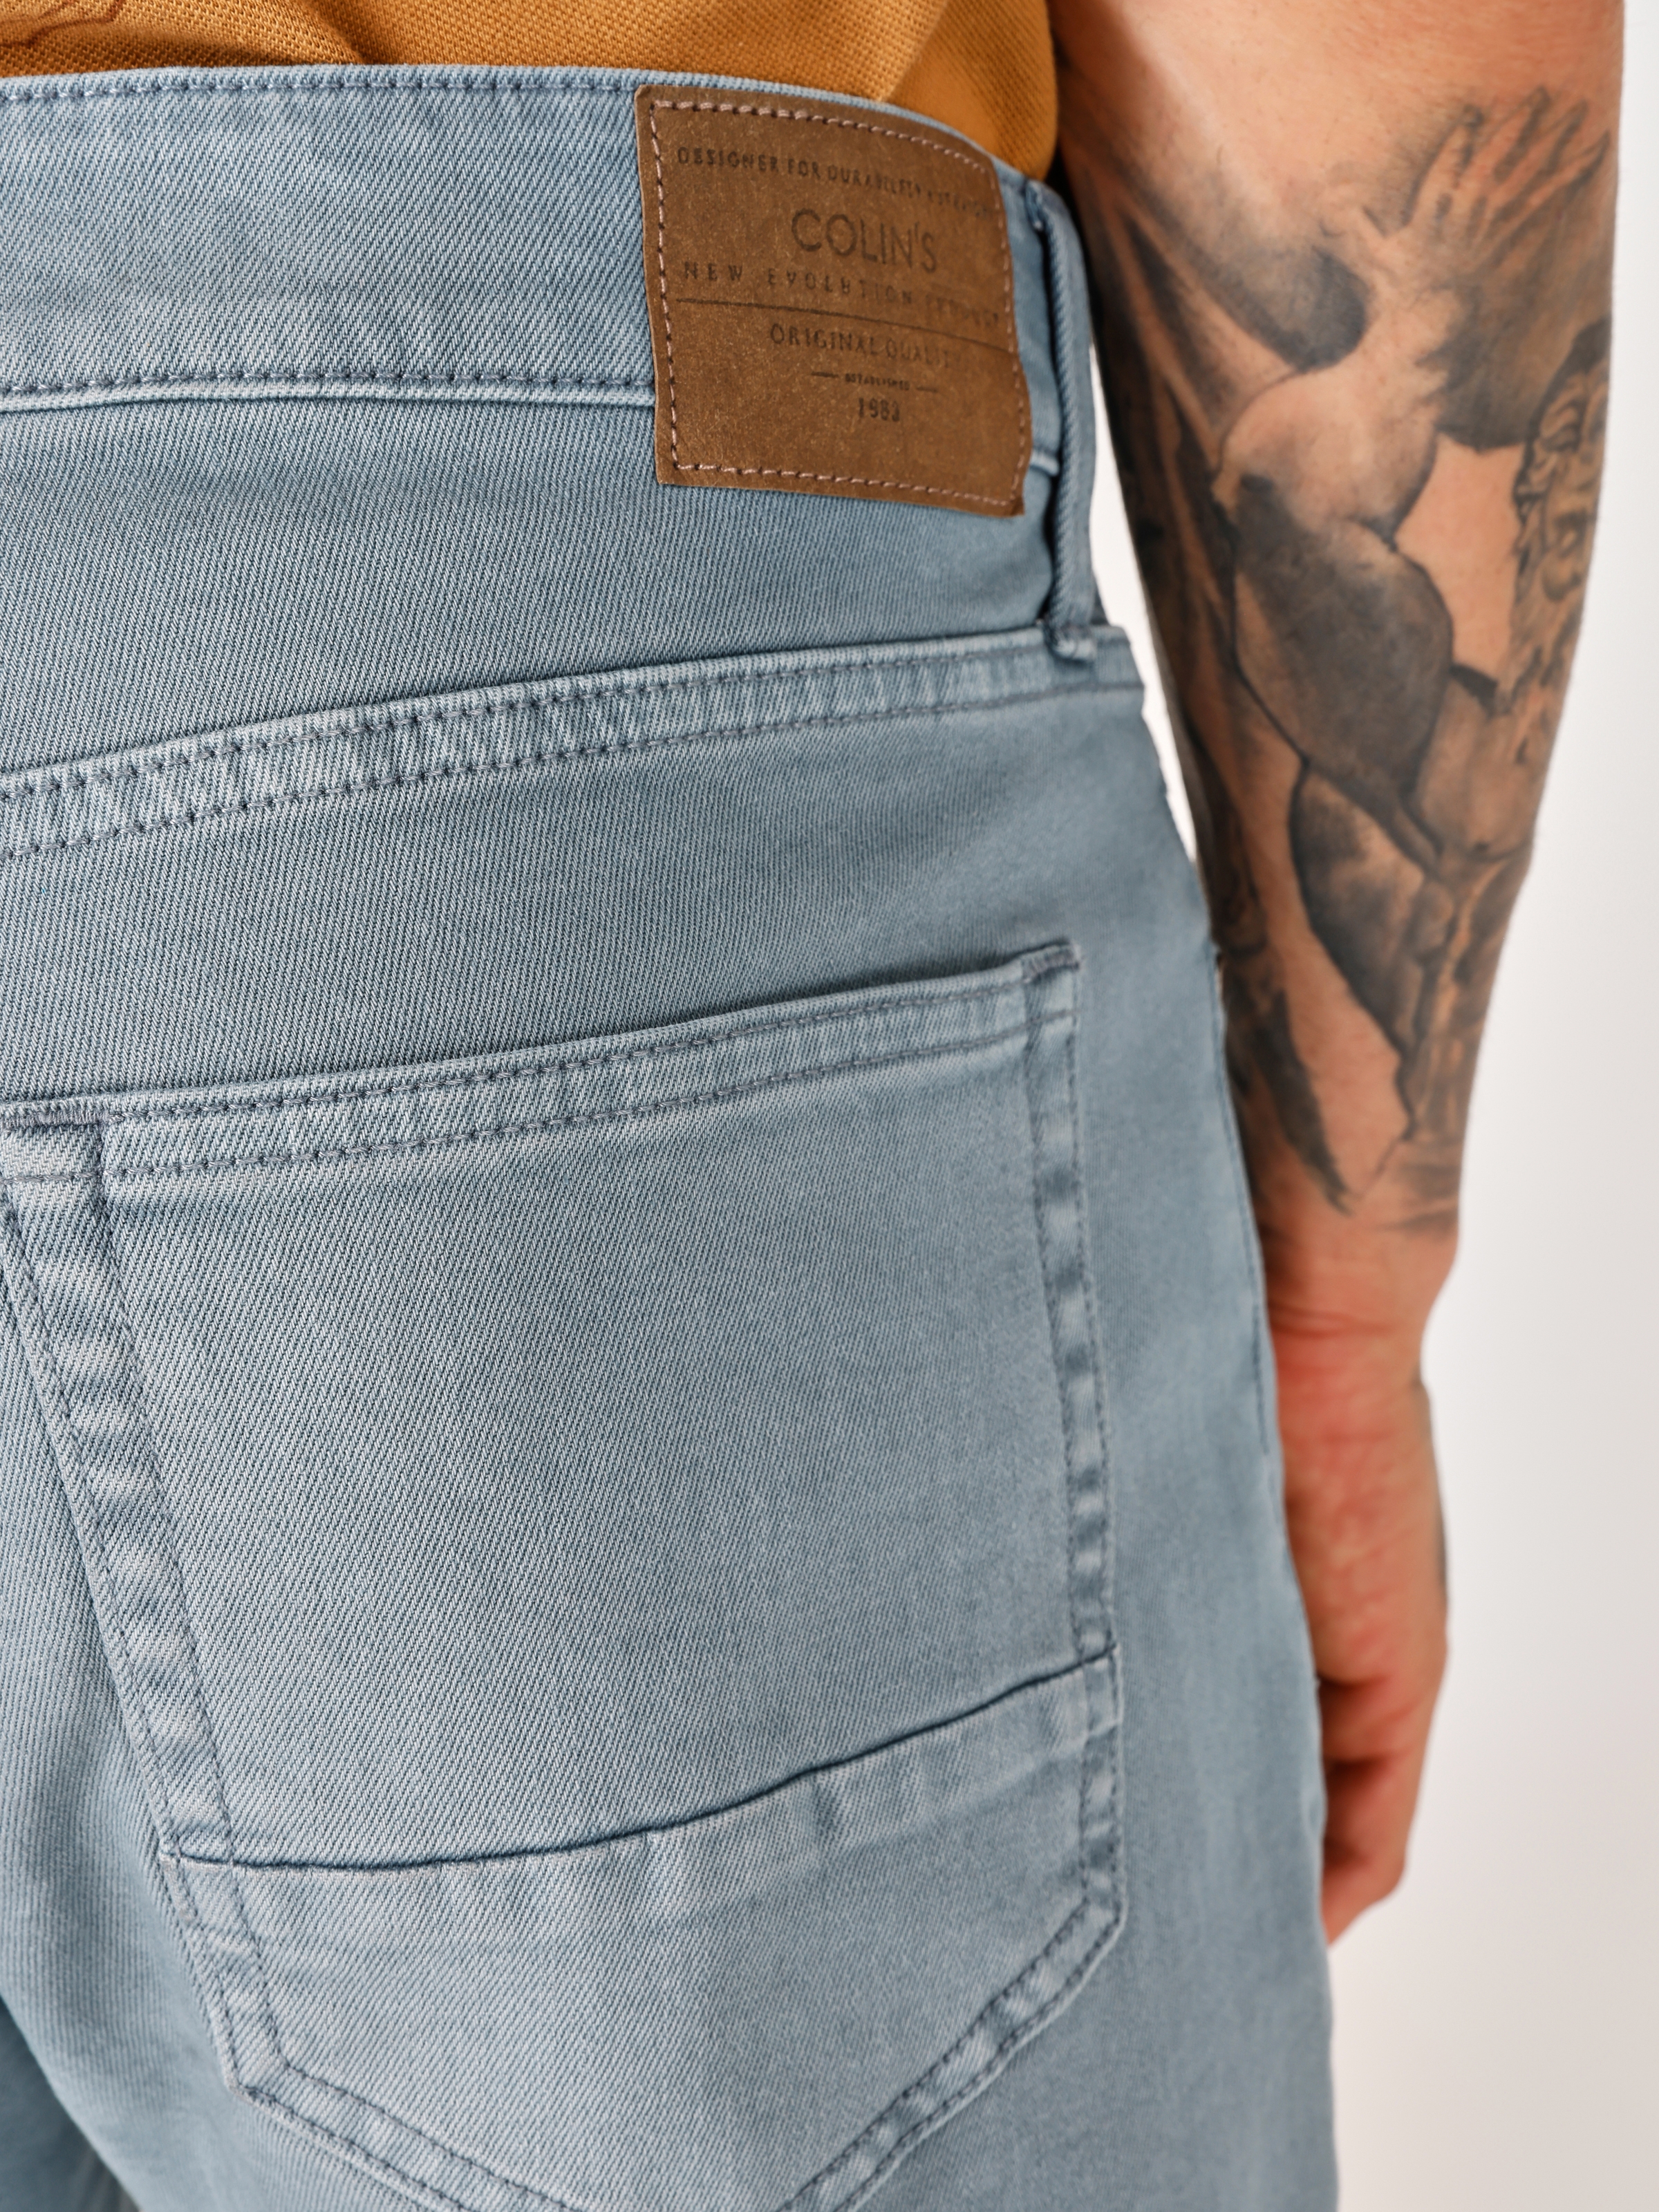 Afișați detalii pentru Short / Pantaloni Scurti De Barbati Albastru Regular Fit  CL1062644